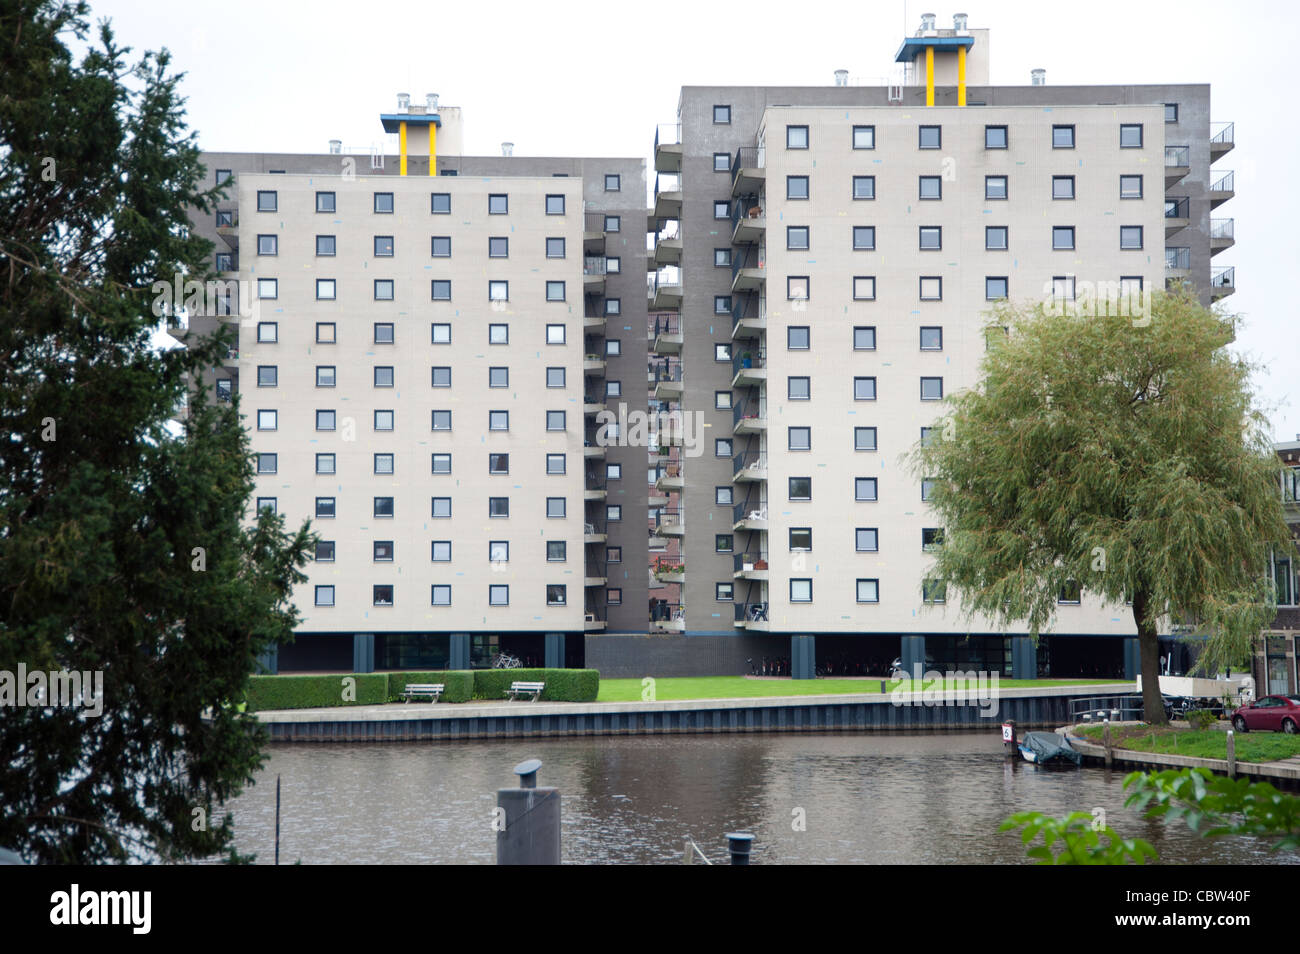 De Brink Apartamentos por el arquitecto holandés Rem Koolhaas, OMA. Groningen, Países Bajos Foto de stock